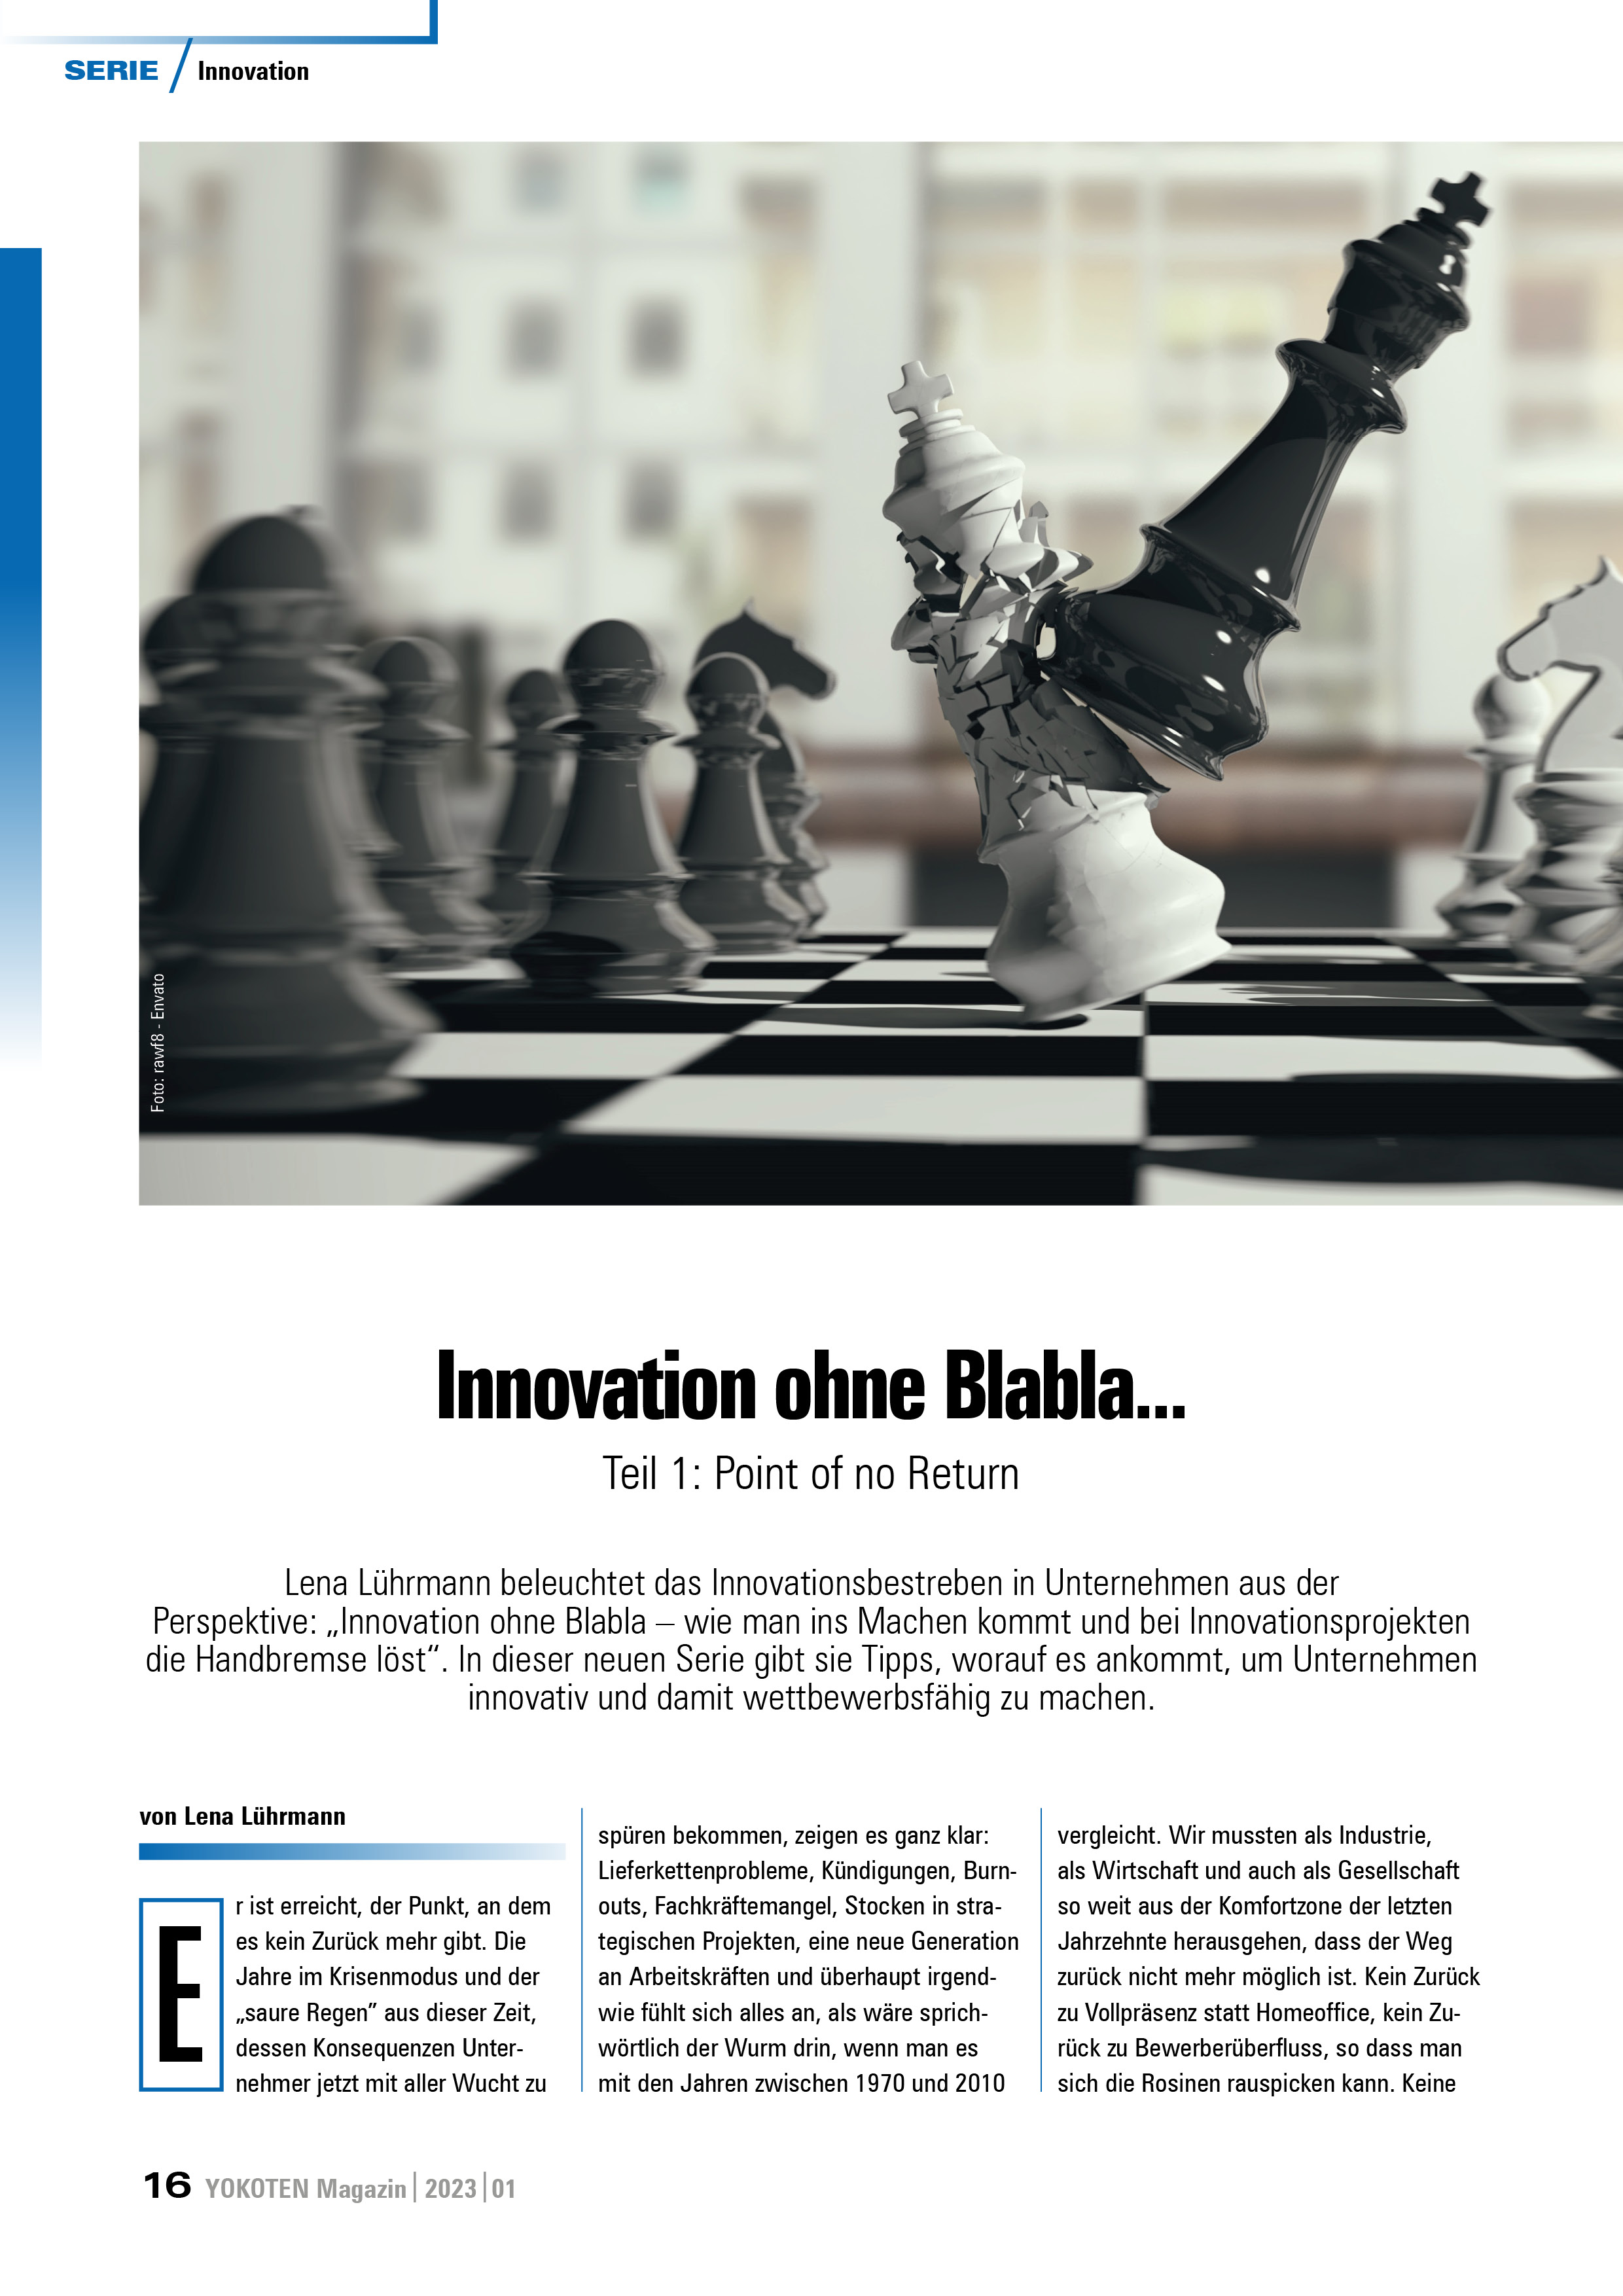 Innovation ohne Blabla... - Teil 1 - Artikel aus Fachmagazin YOKOTEN 2023-01